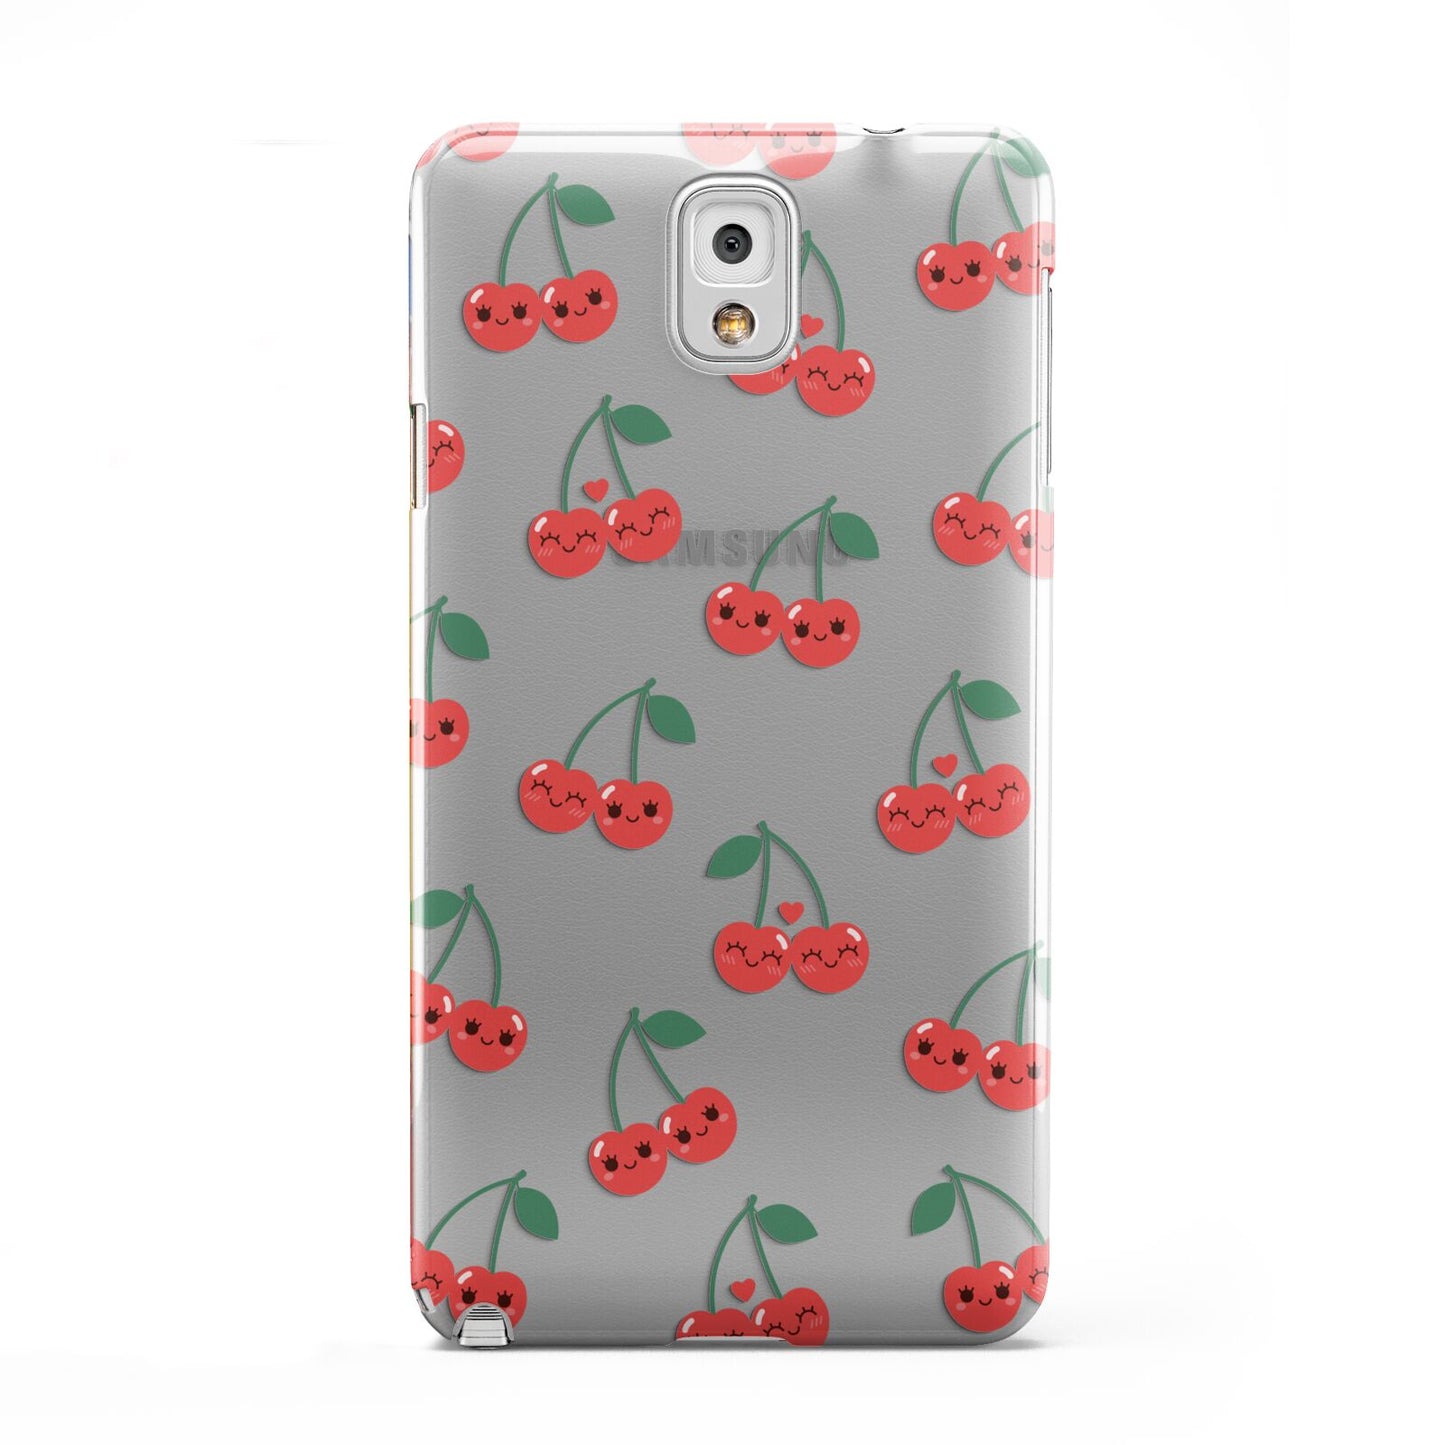 Cherry Samsung Galaxy Note 3 Case